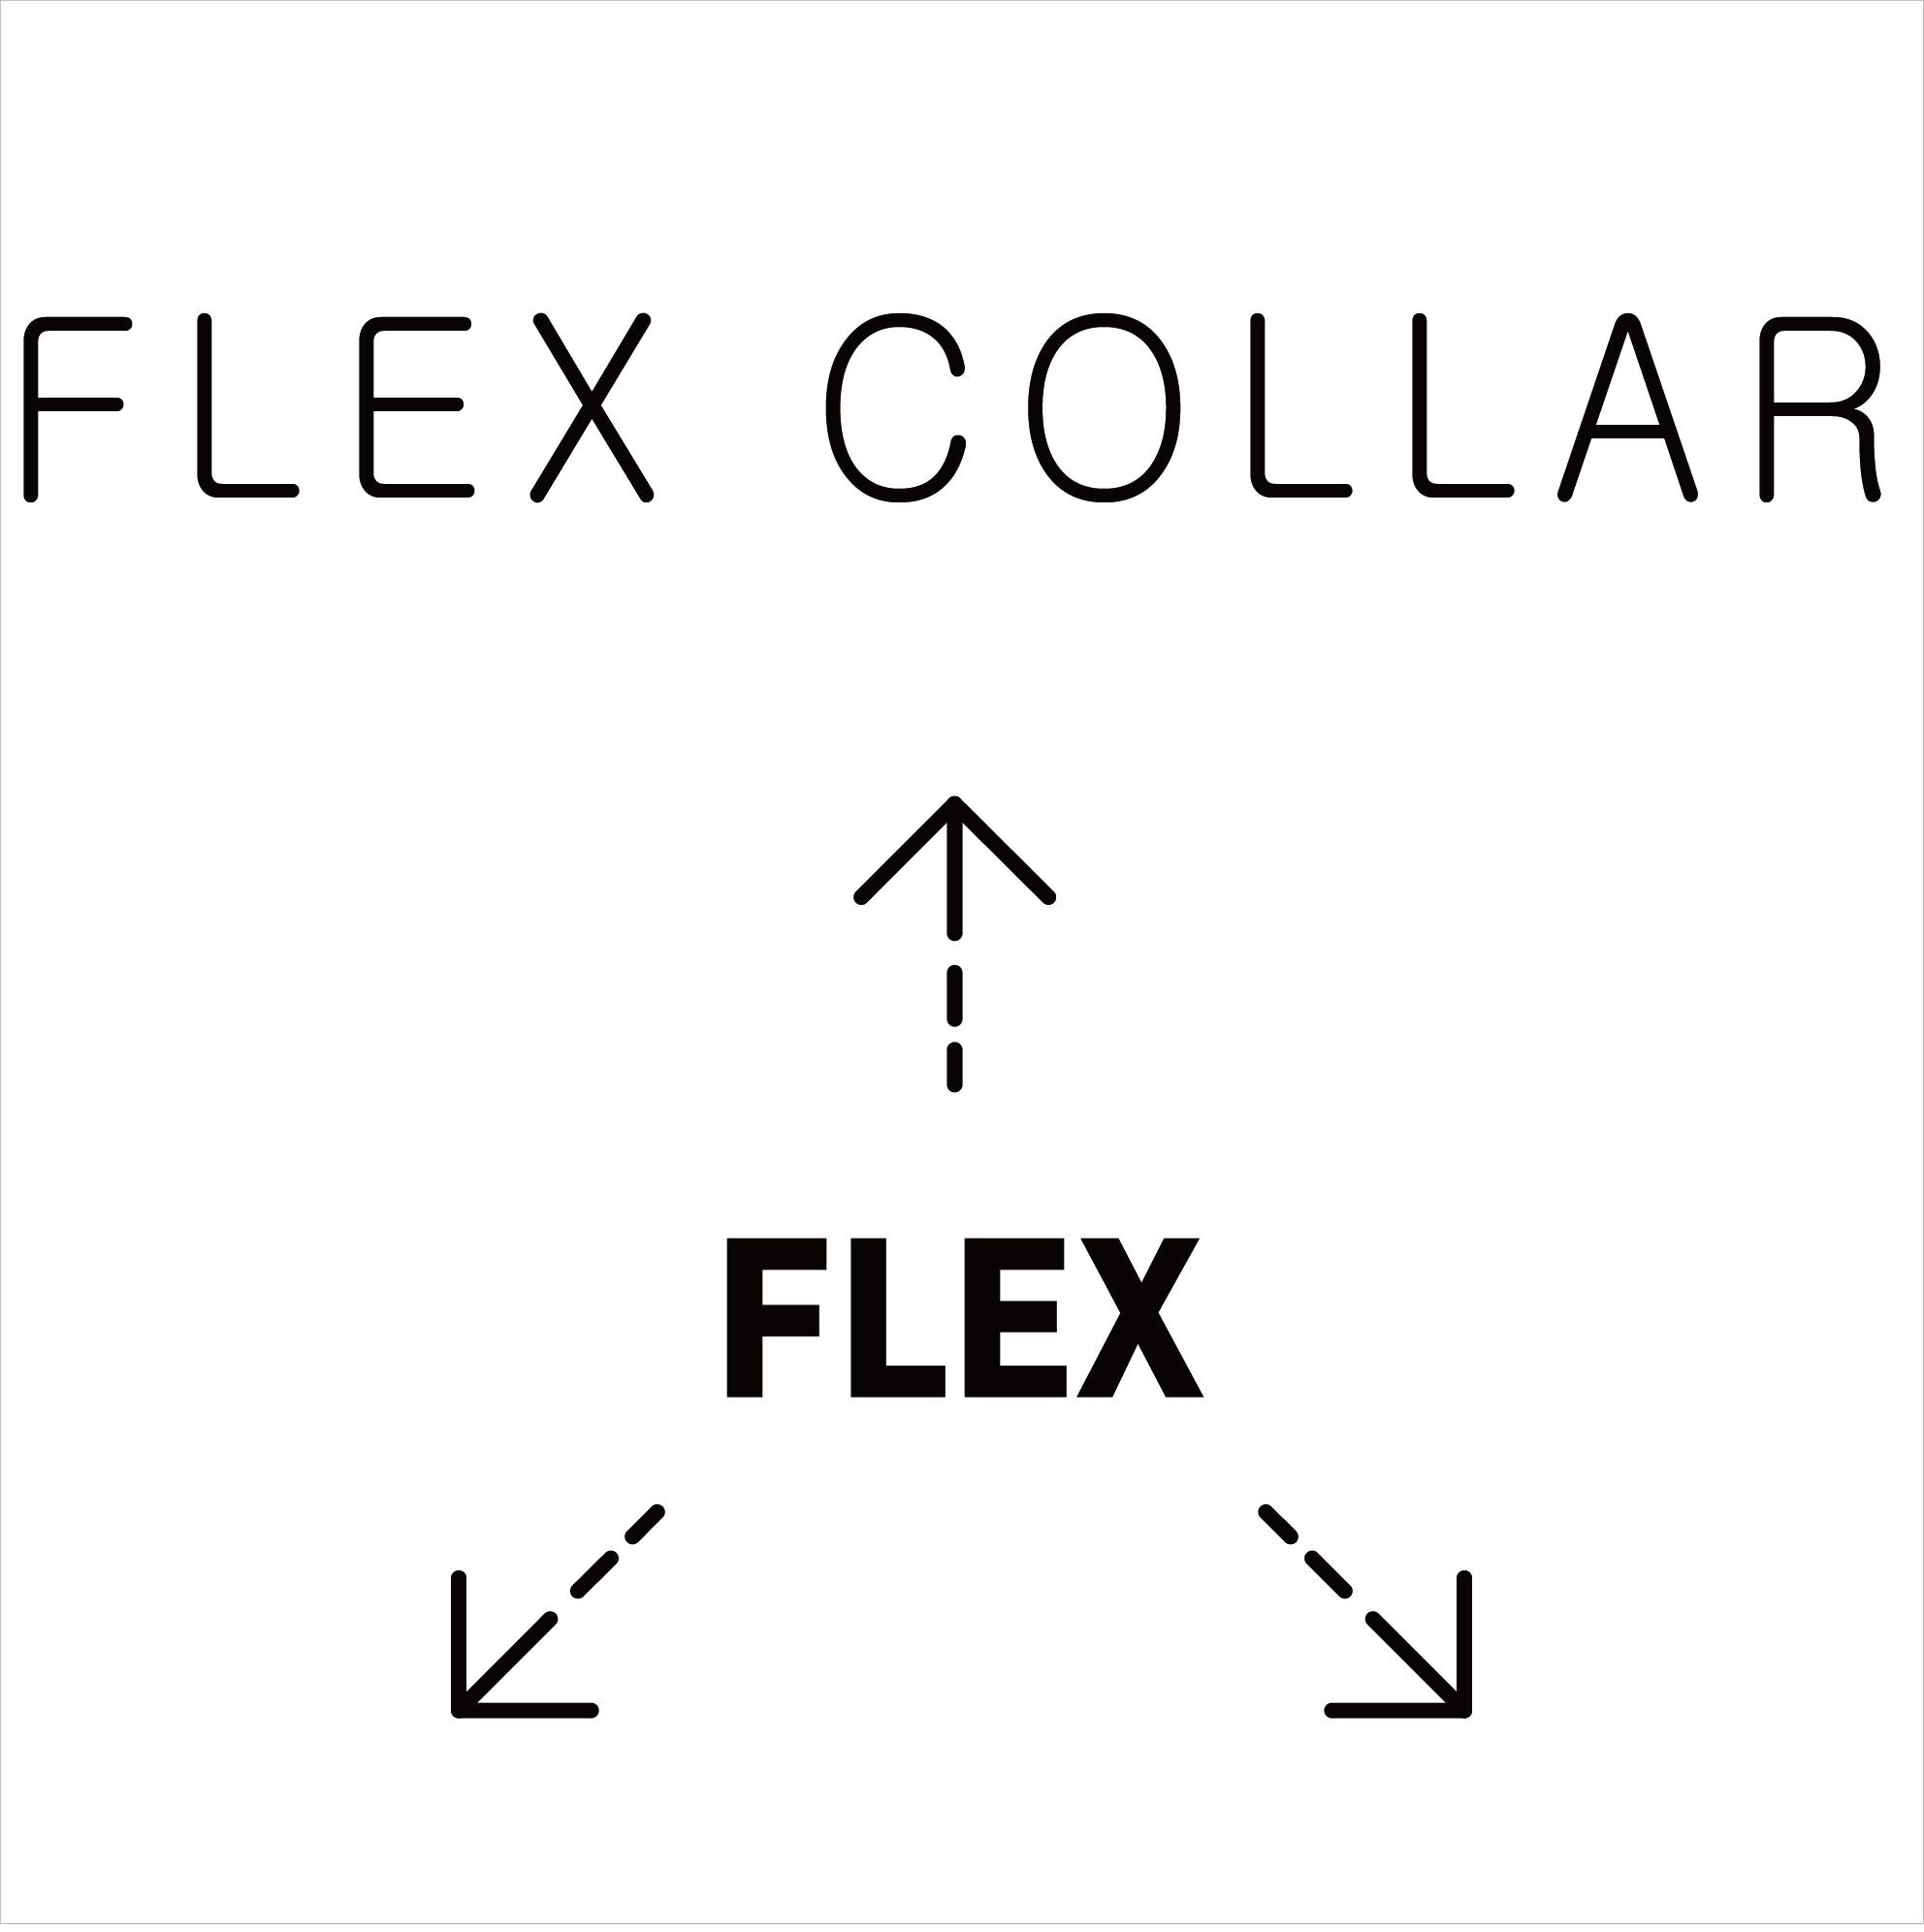 FLEX COLLAR